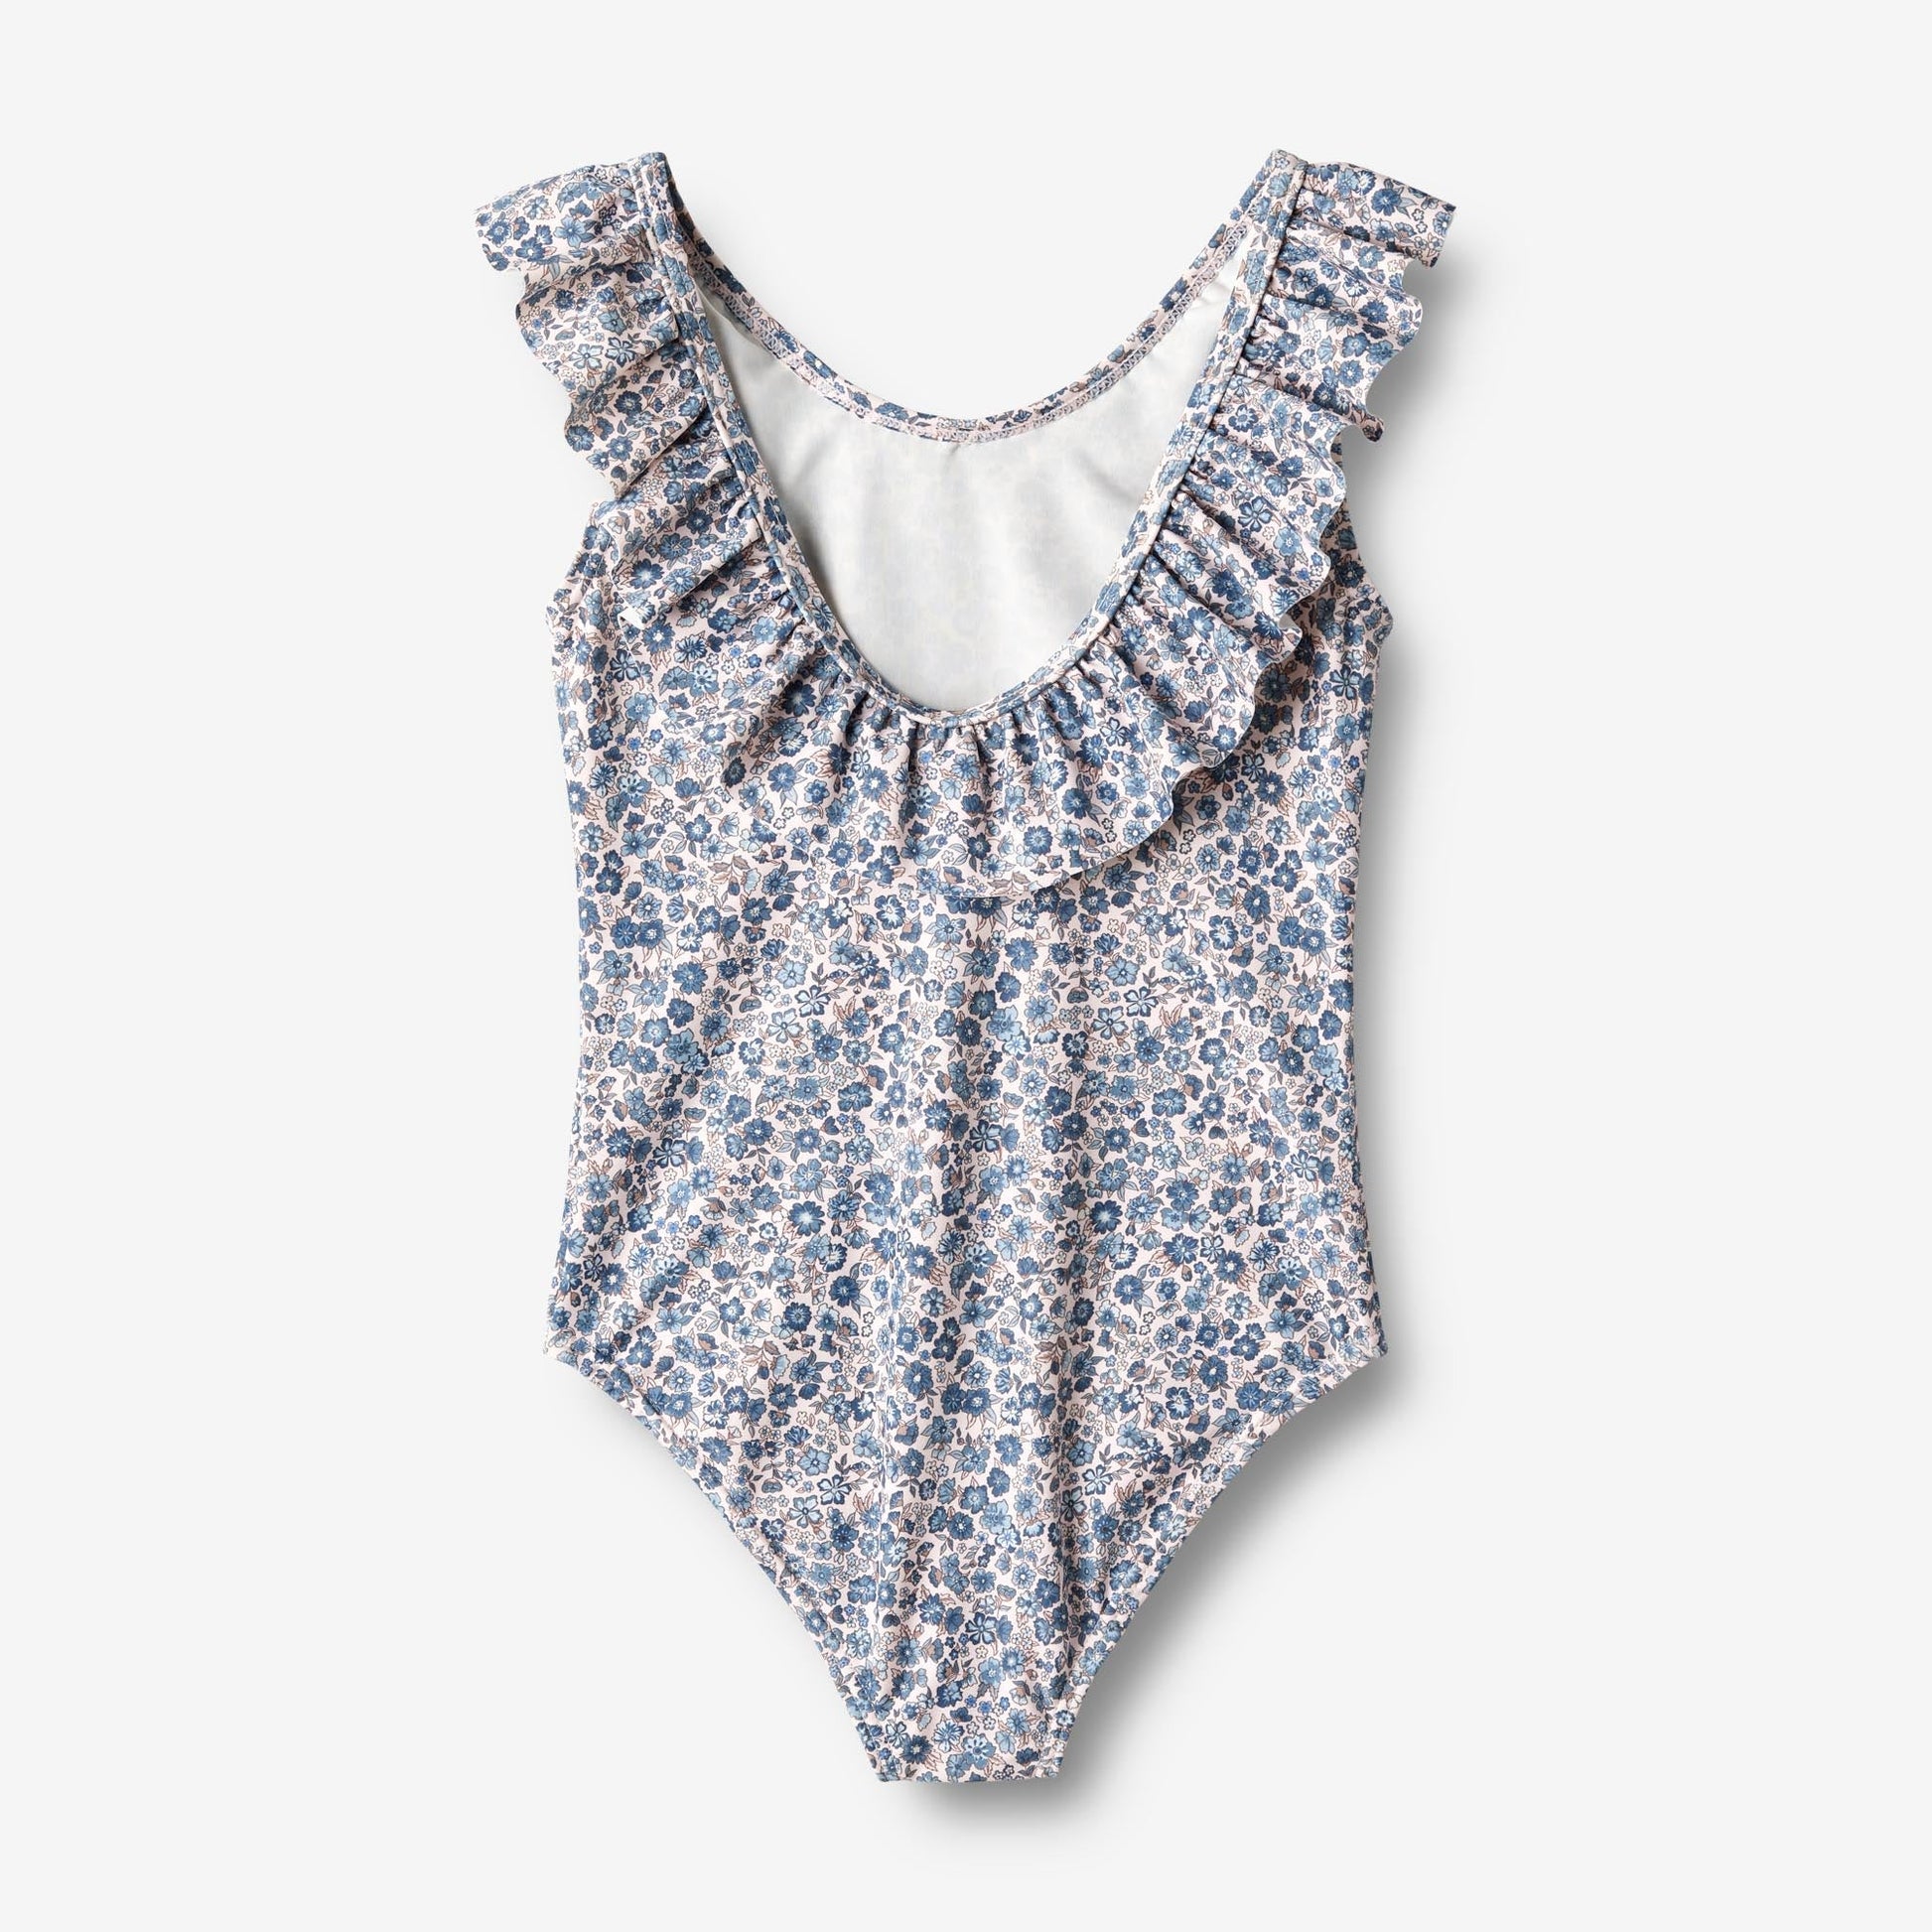 Wheat 'Marie-Louise' Children's Swimsuit - Blue Flower Meadow